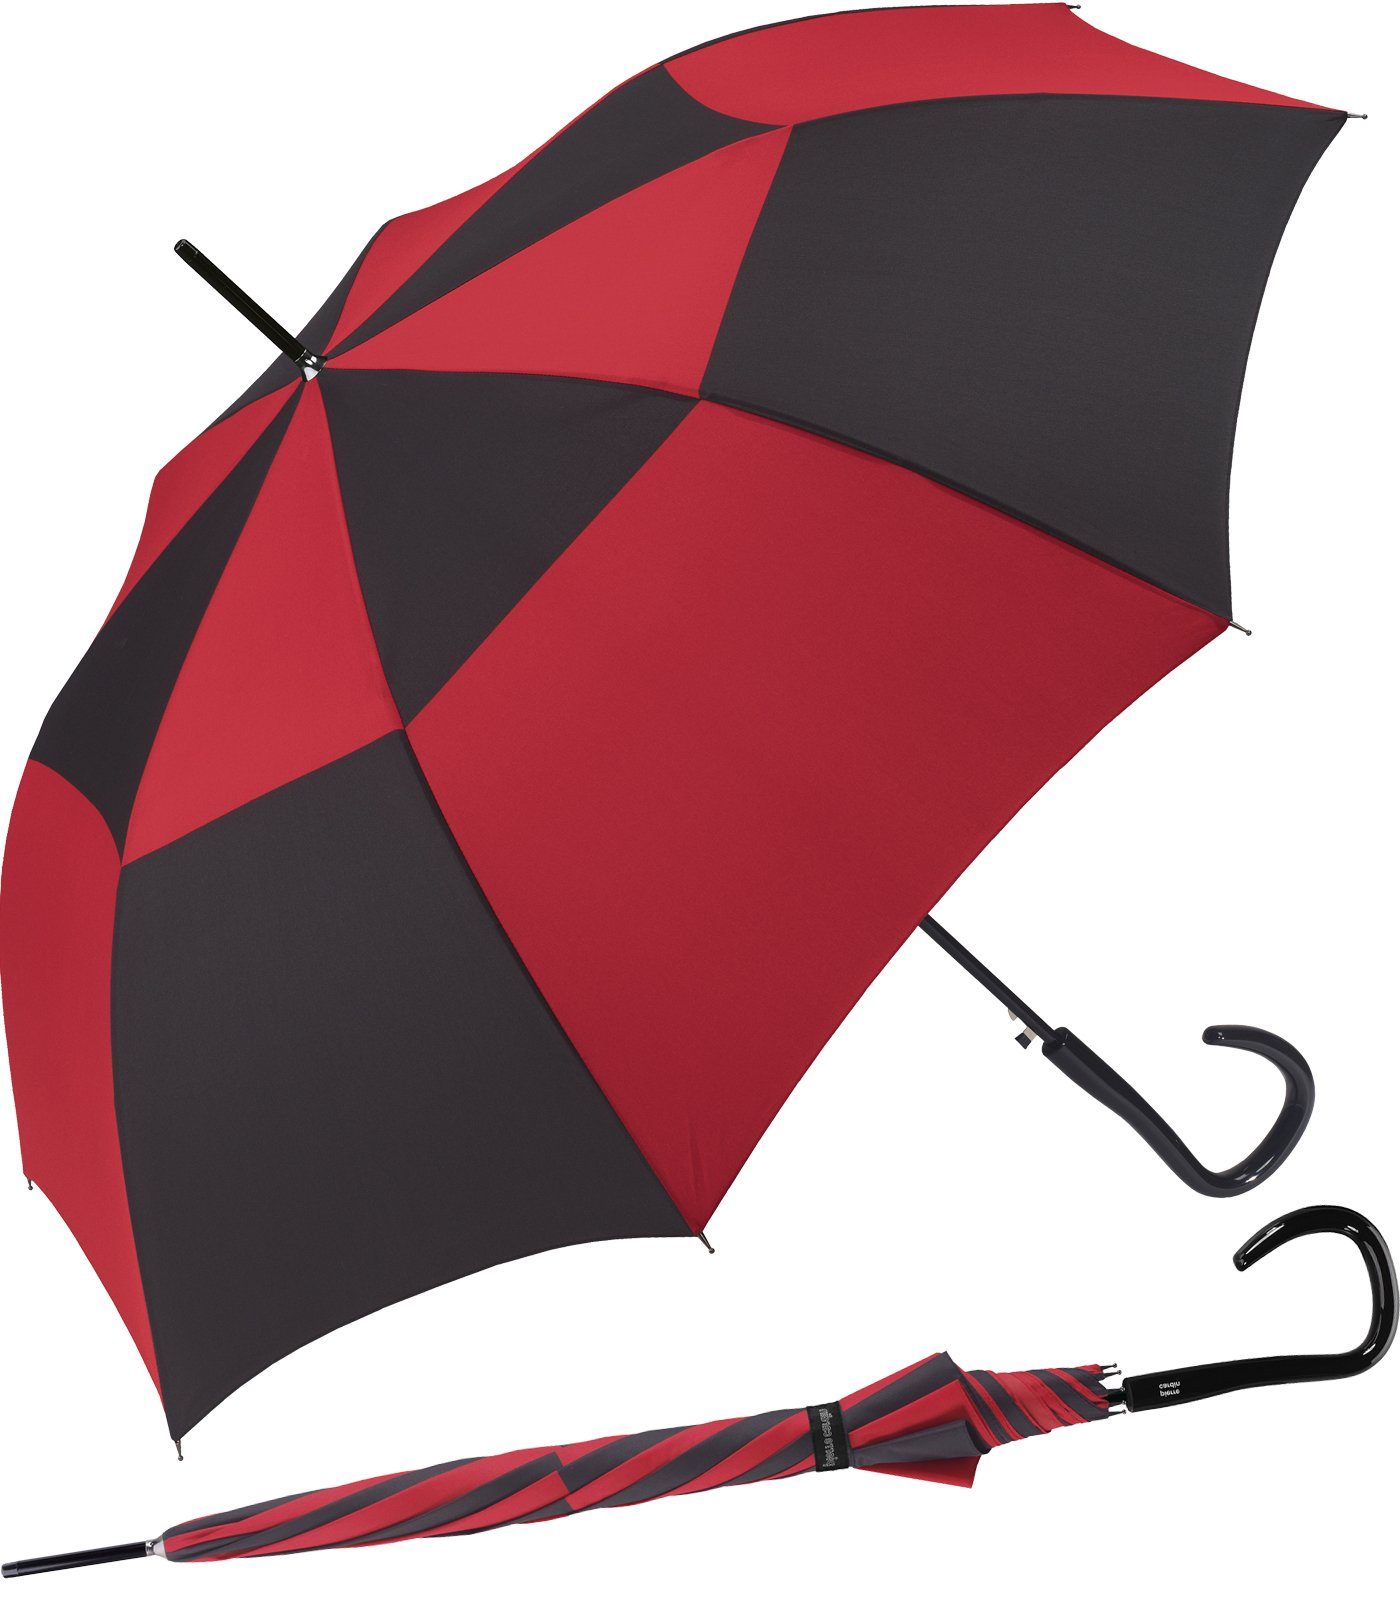 Pierre Cardin Langregenschirm großer Damen-Regenschirm mit Auf-Automatik, starke Kontraste auf einem eleganten Schirm rot-schwarz